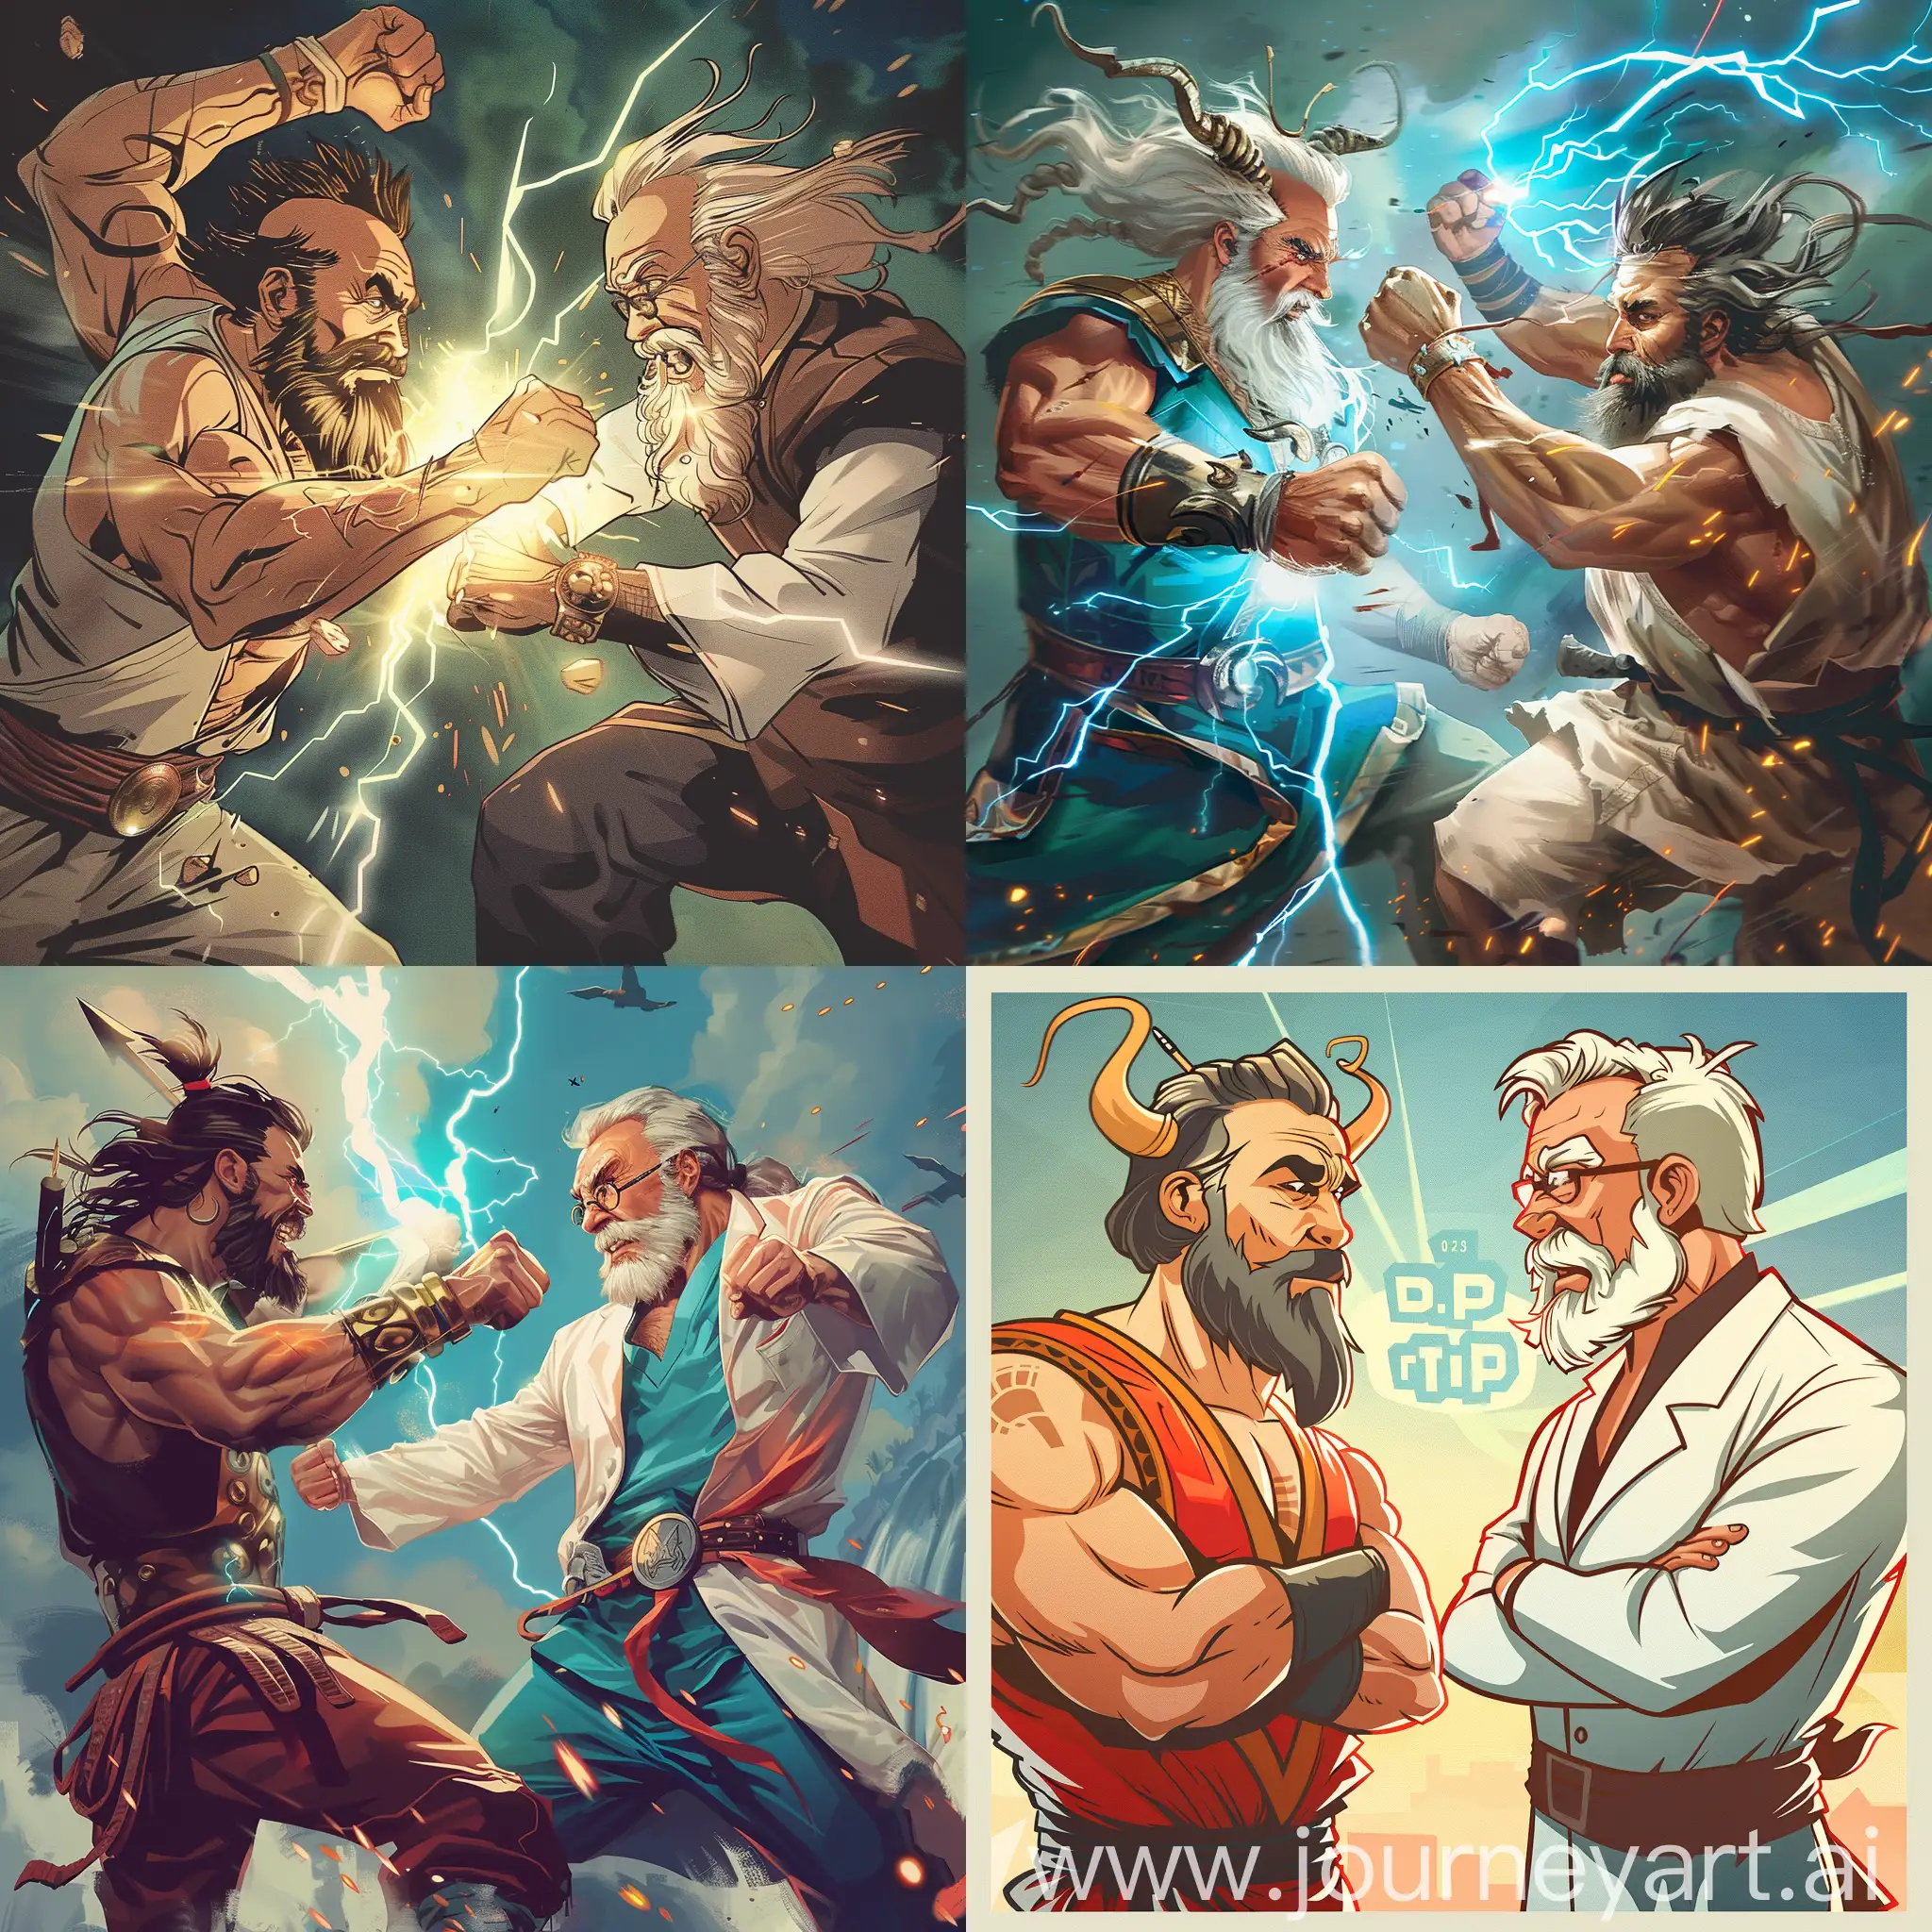 Epic-Showdown-Dr-Zeus-Faces-off-Against-Dr-Phil-in-Mortal-Combat-Style